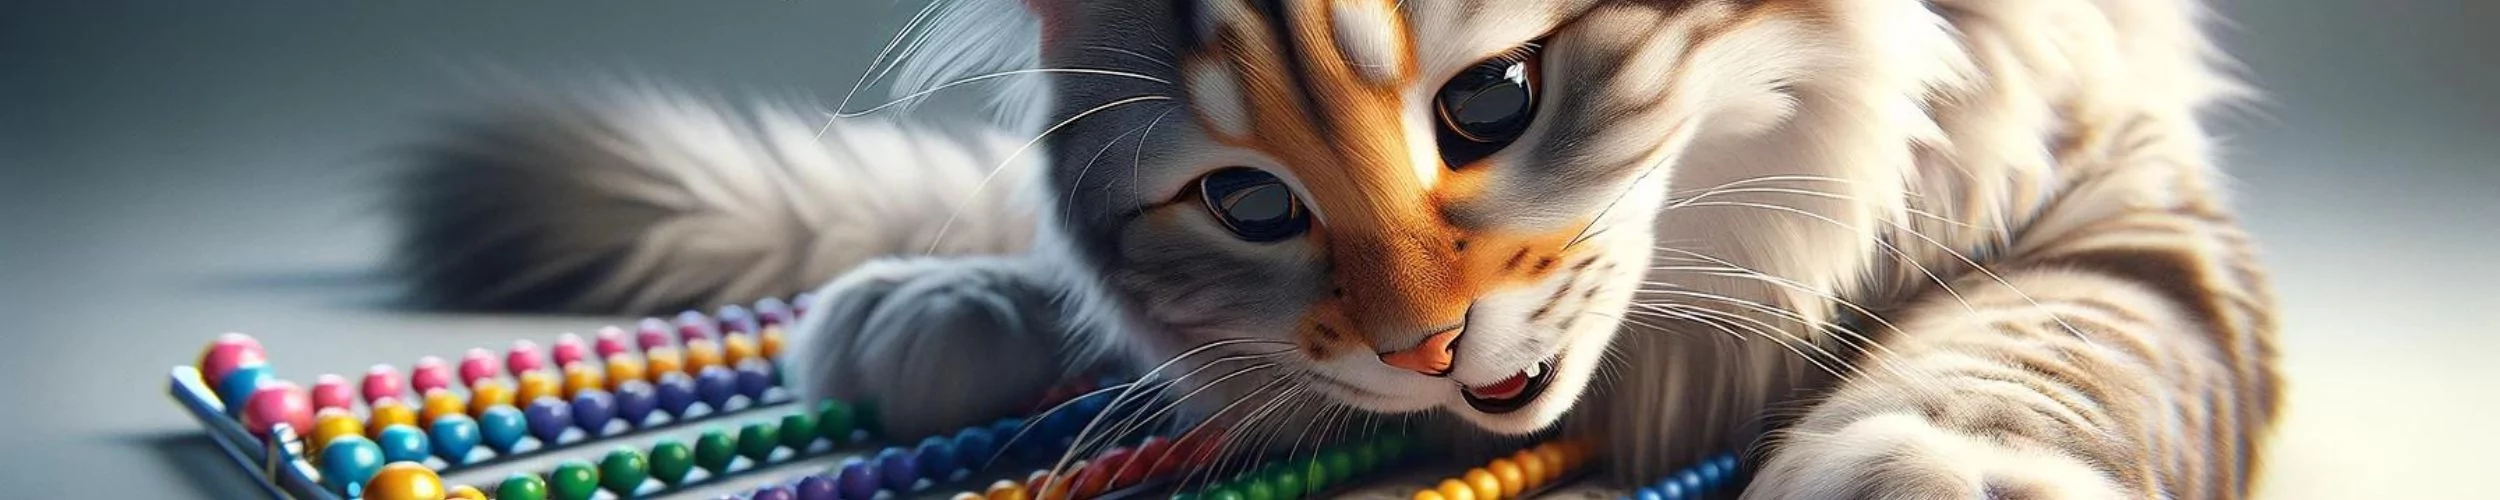 Katze sinnvoll beschäftigen mit Fummelbrett und Intelligenzspielzeug